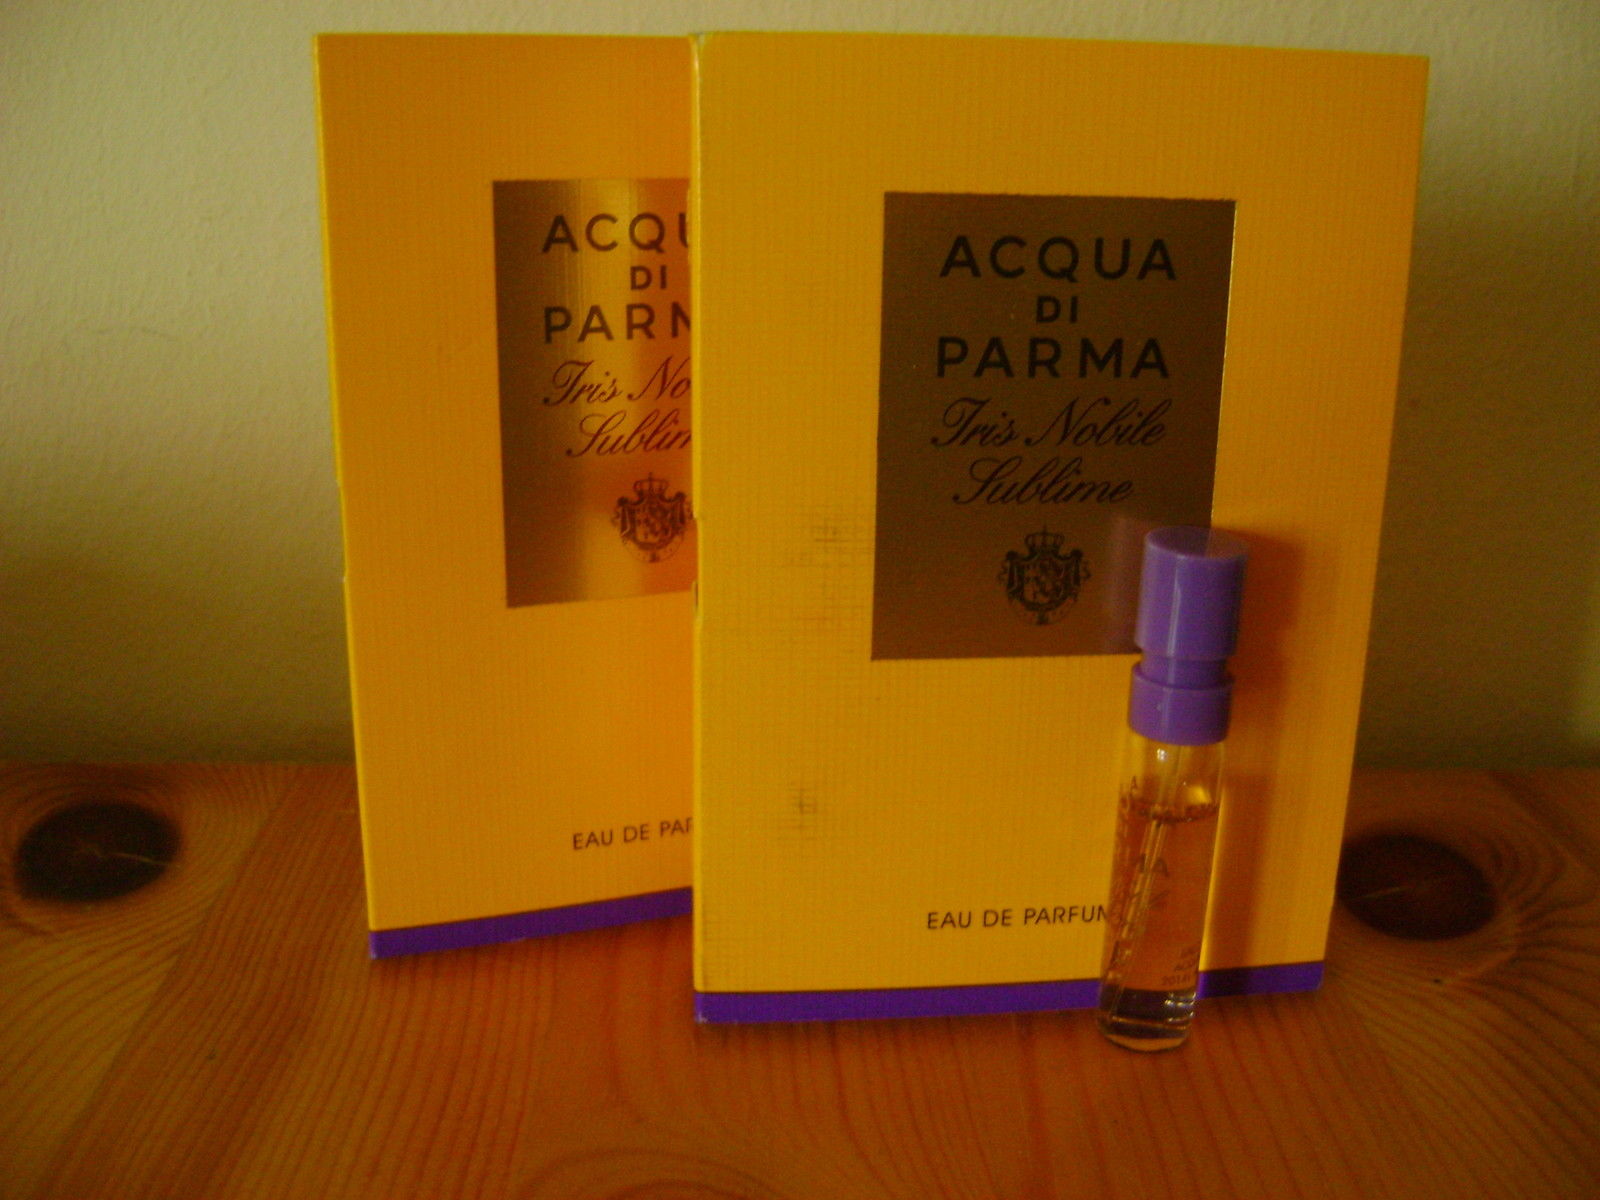 Acqua-Di-Parma-Iris-Nobile-samples